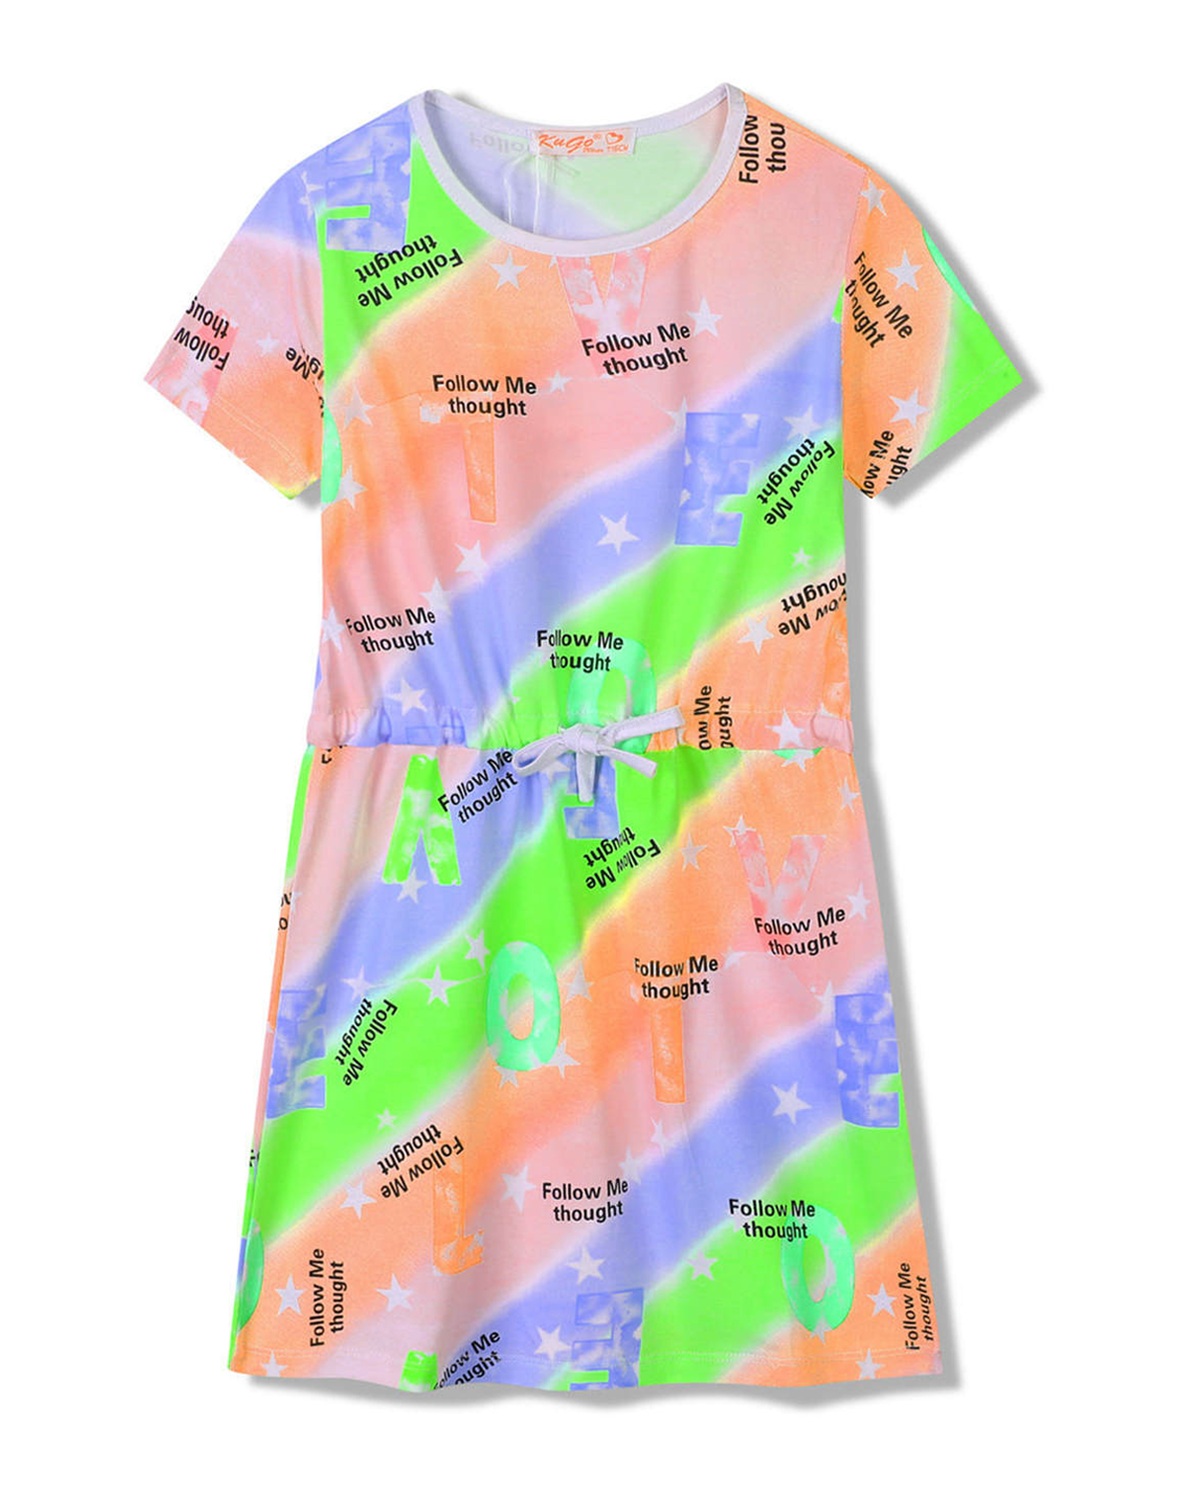 Dívčí šaty - KUGO SH3518, mix barev / bílý lem Barva: Mix barev, Velikost: 140